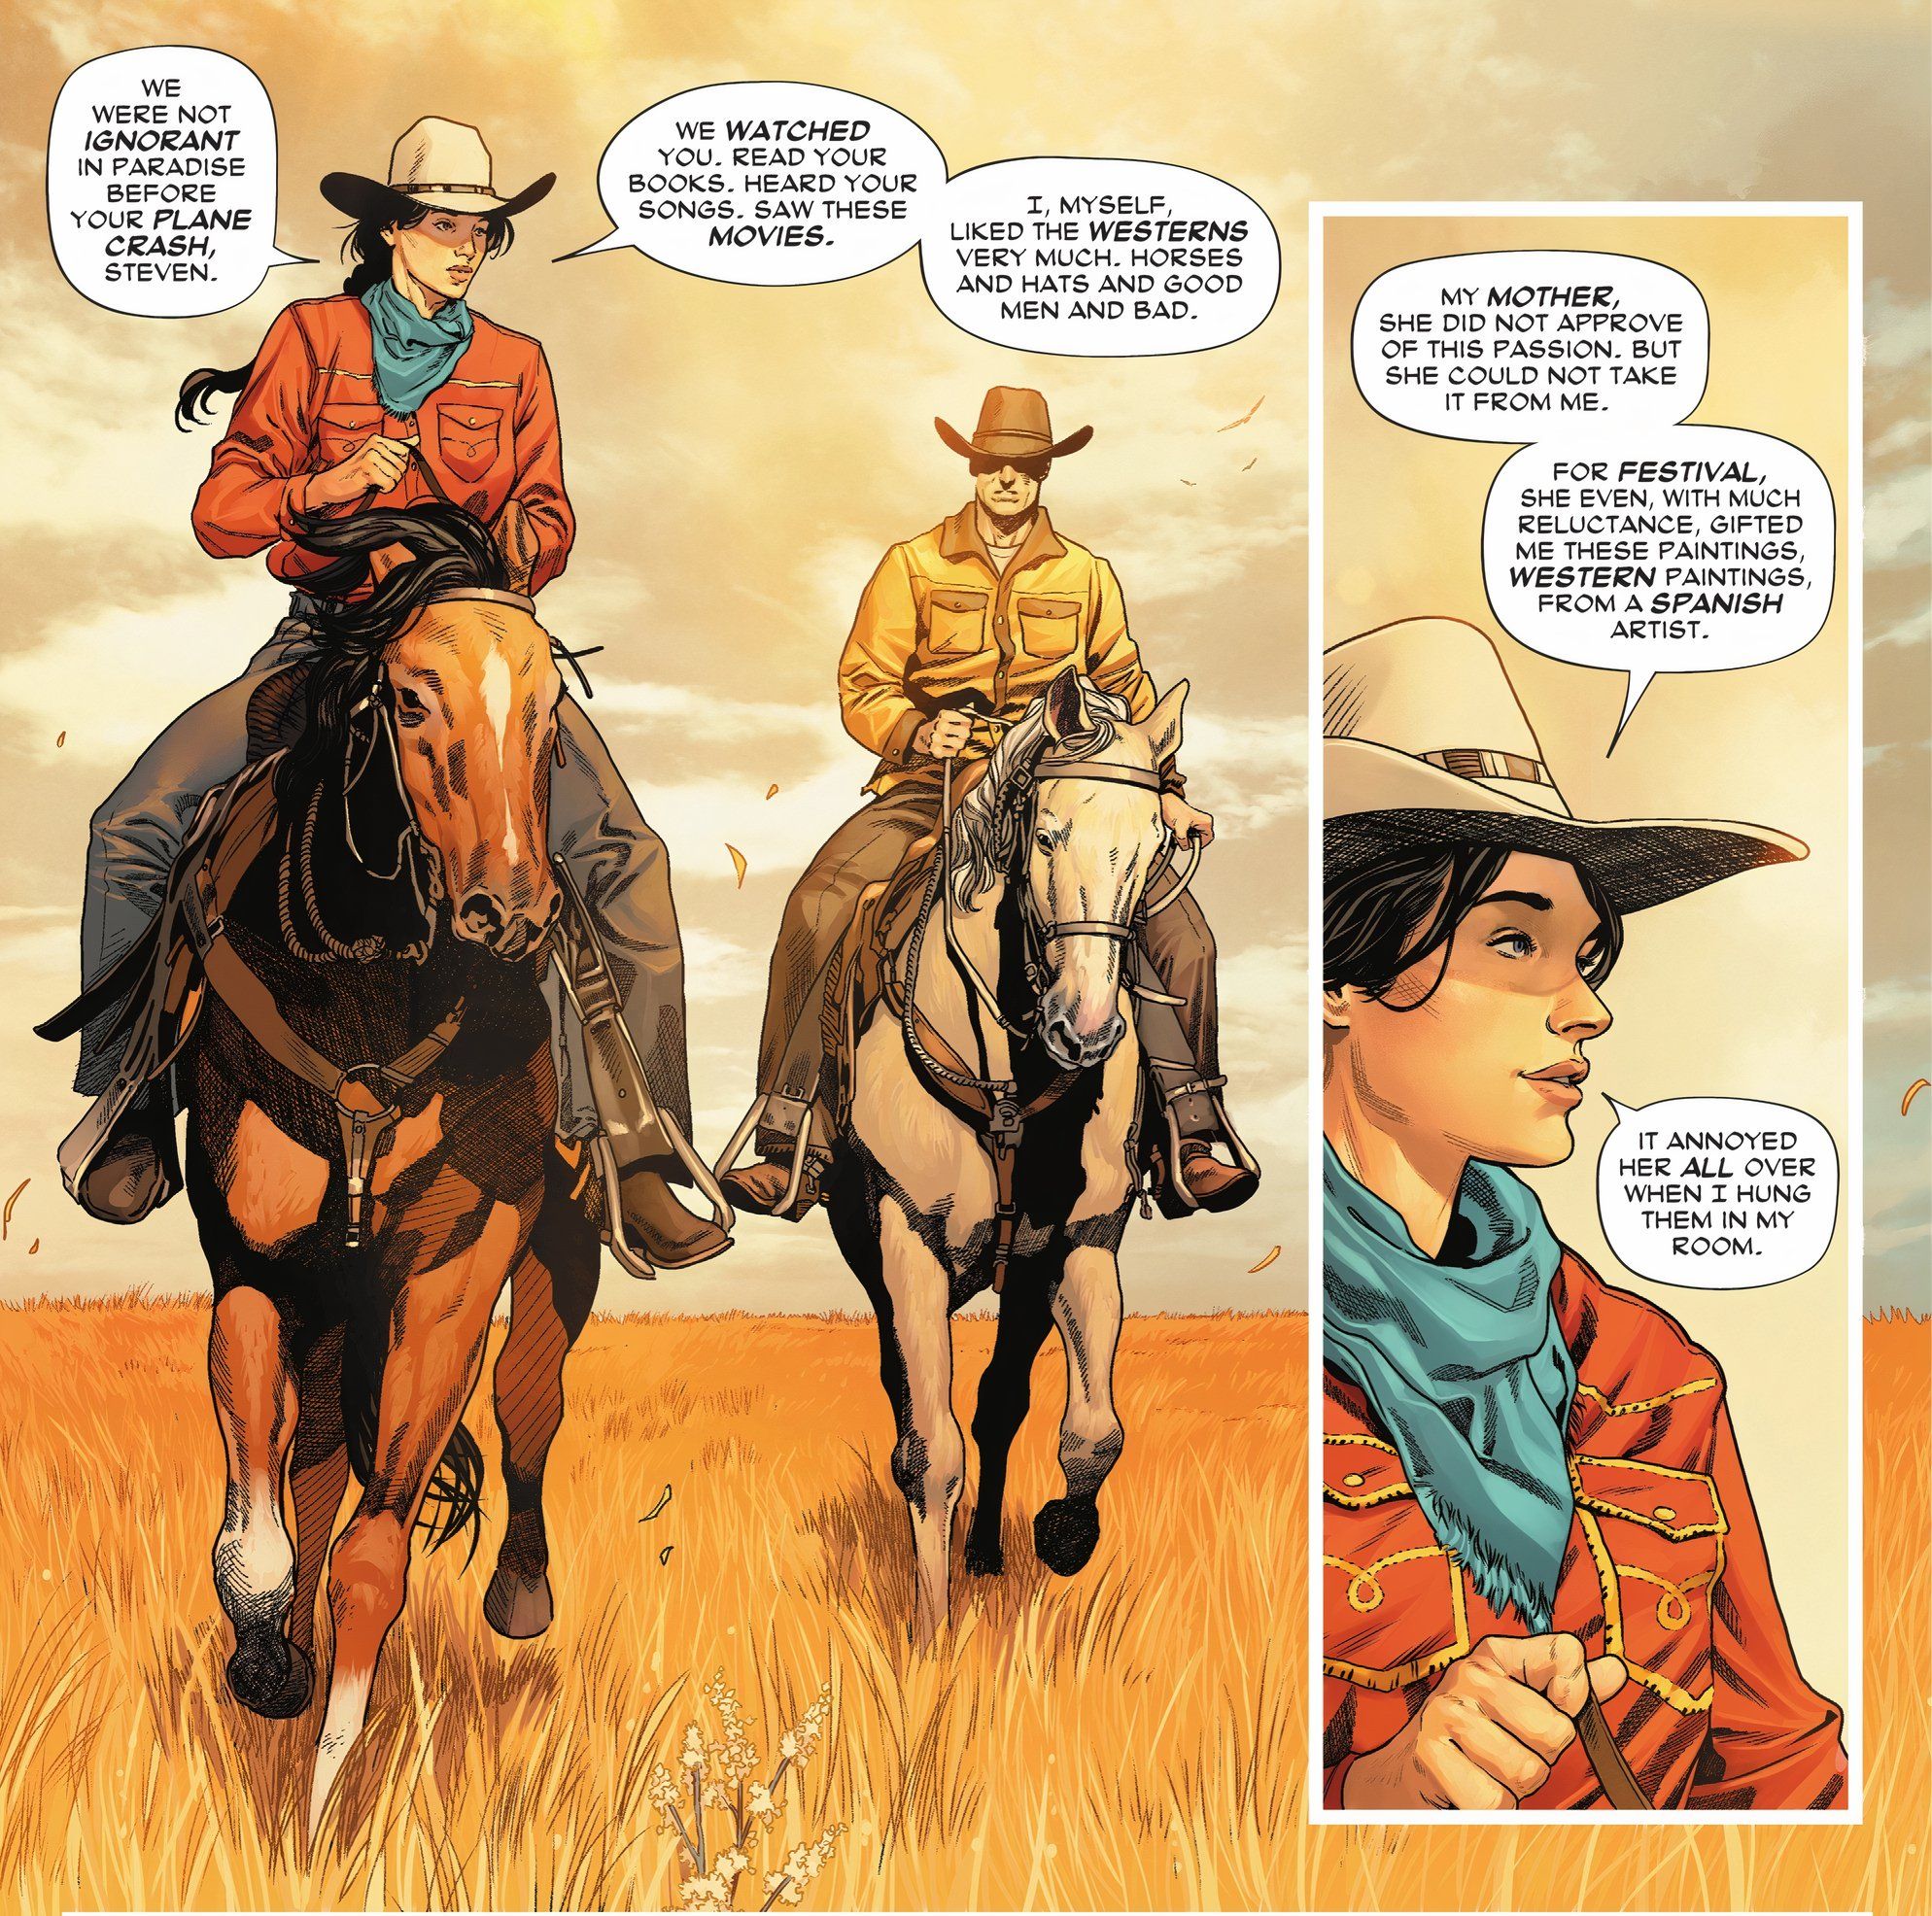 Mulher Maravilha # 9 Cowgirl Cowboy Cavalos e Chapéus Ocidentais